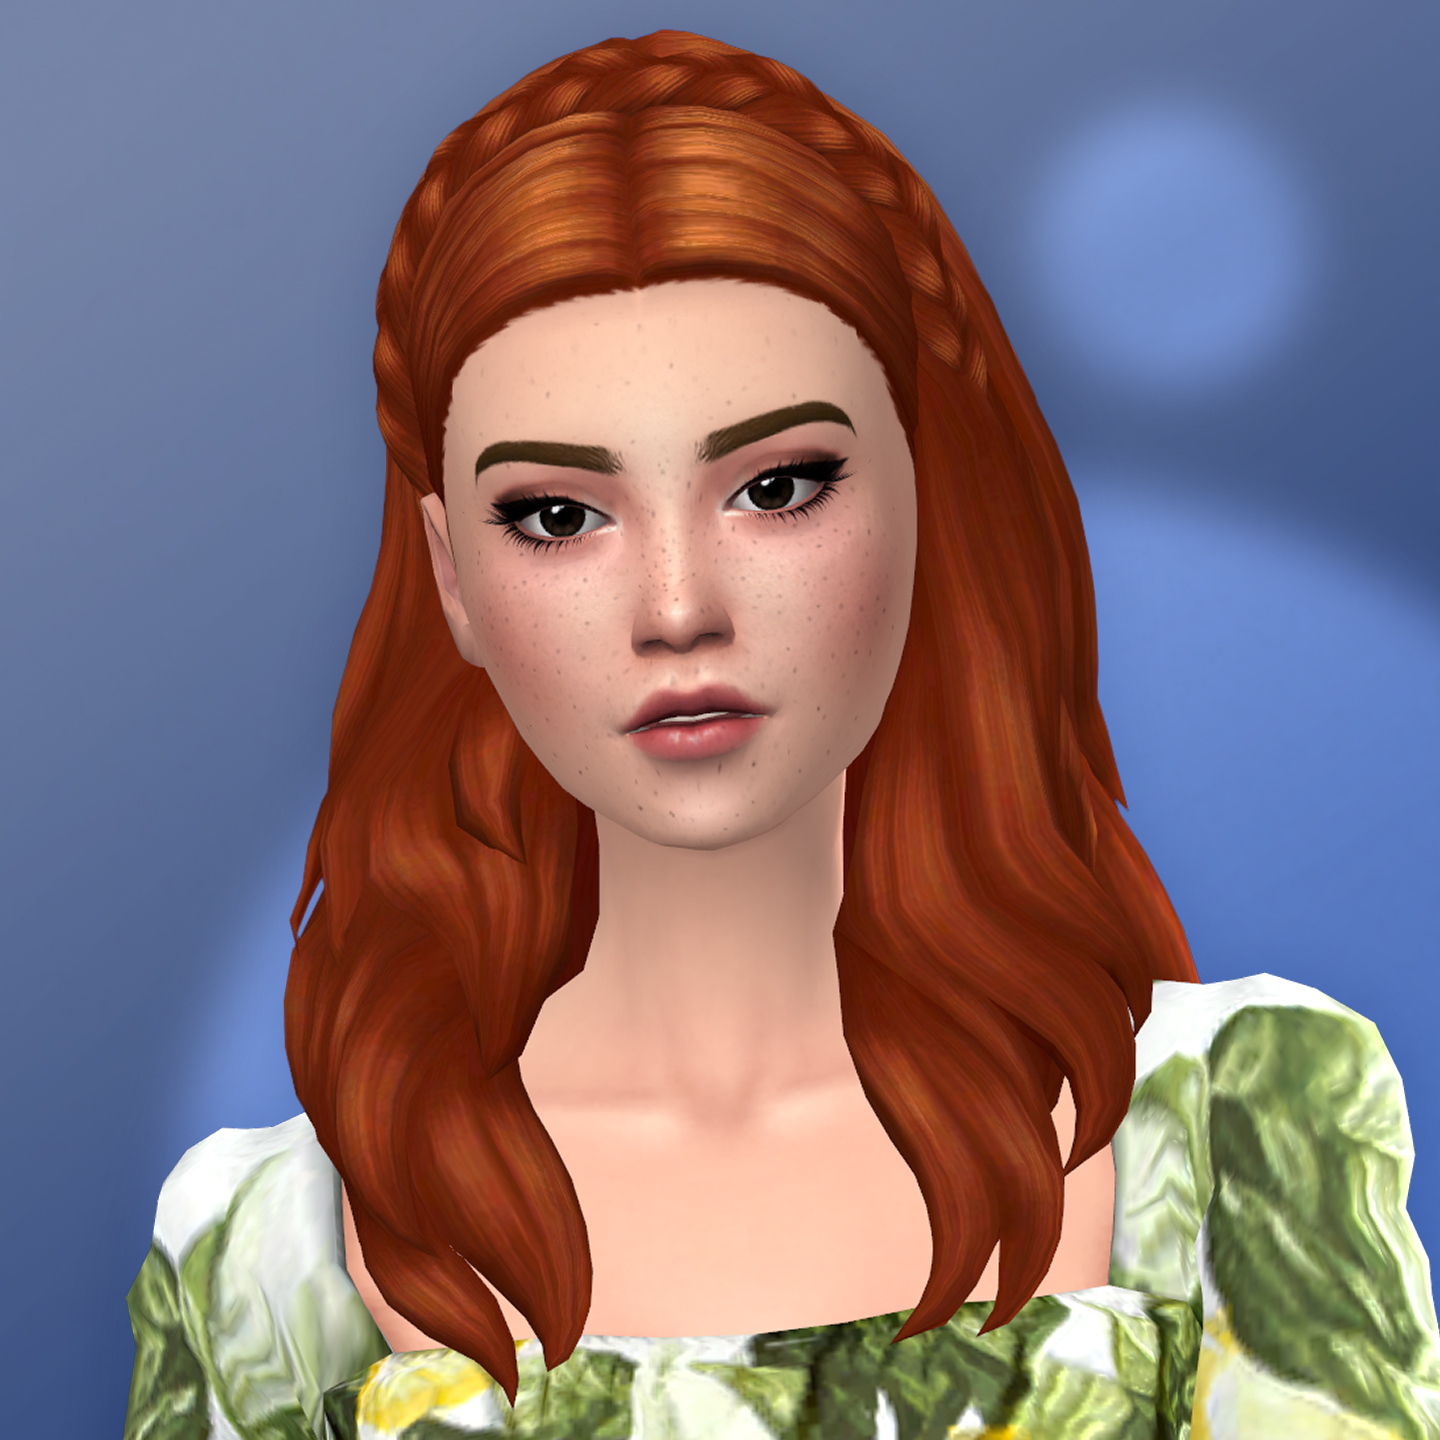 QICC - Summer Hair - The Sims 4 Create a Sim - CurseForge